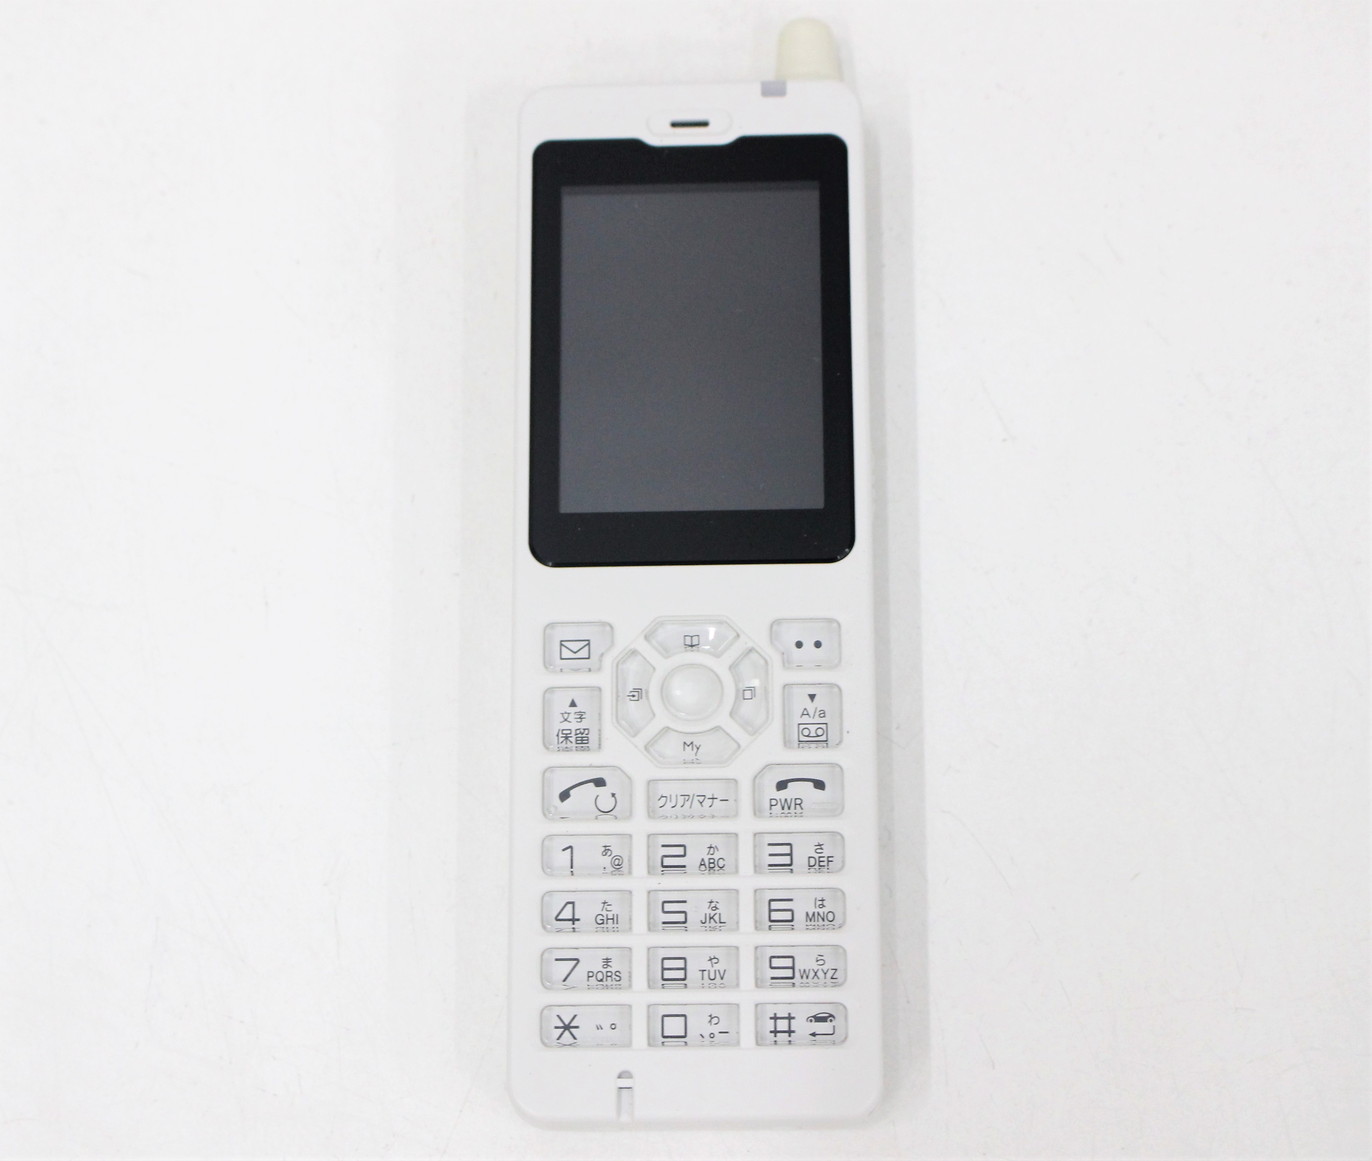 WILLCOM WX01JR 日本無線株式会社製 デジタルコードレス電話機